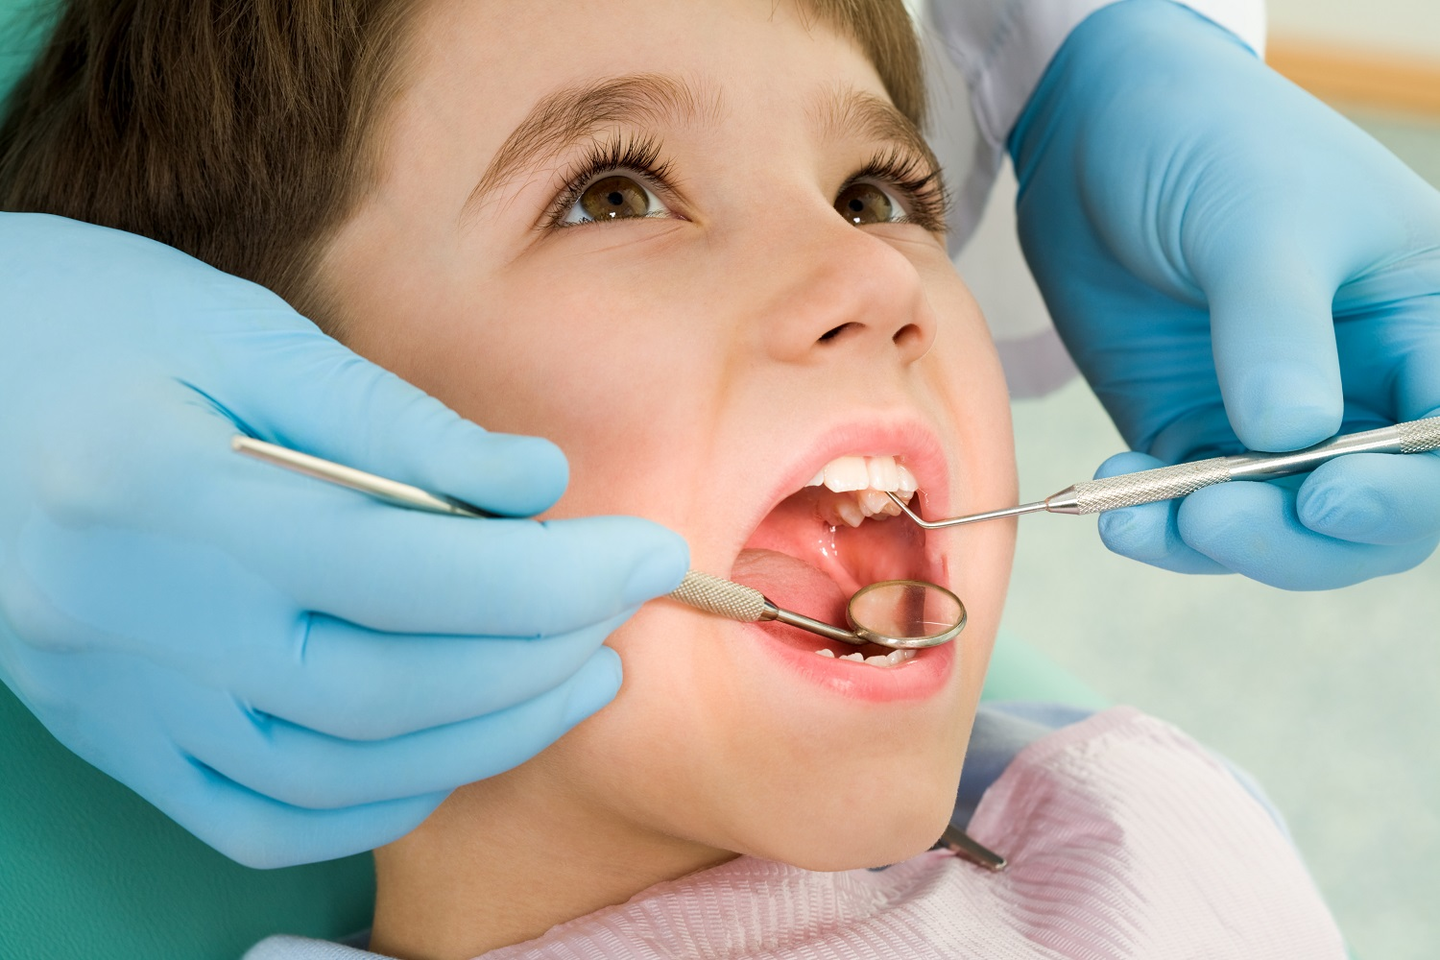 Kol vaikutis mažas, dantys jam padeda atlikti tokias gyvybines funkcijas kaip valgymas ir kalbėjimas, taip pat jie svarbūs bendram žandikaulių ir atramą apatiniam dantų lankui sudarančios alveolinės ataugos vystymuisi.<br>Pranešimo spaudai nuotr.